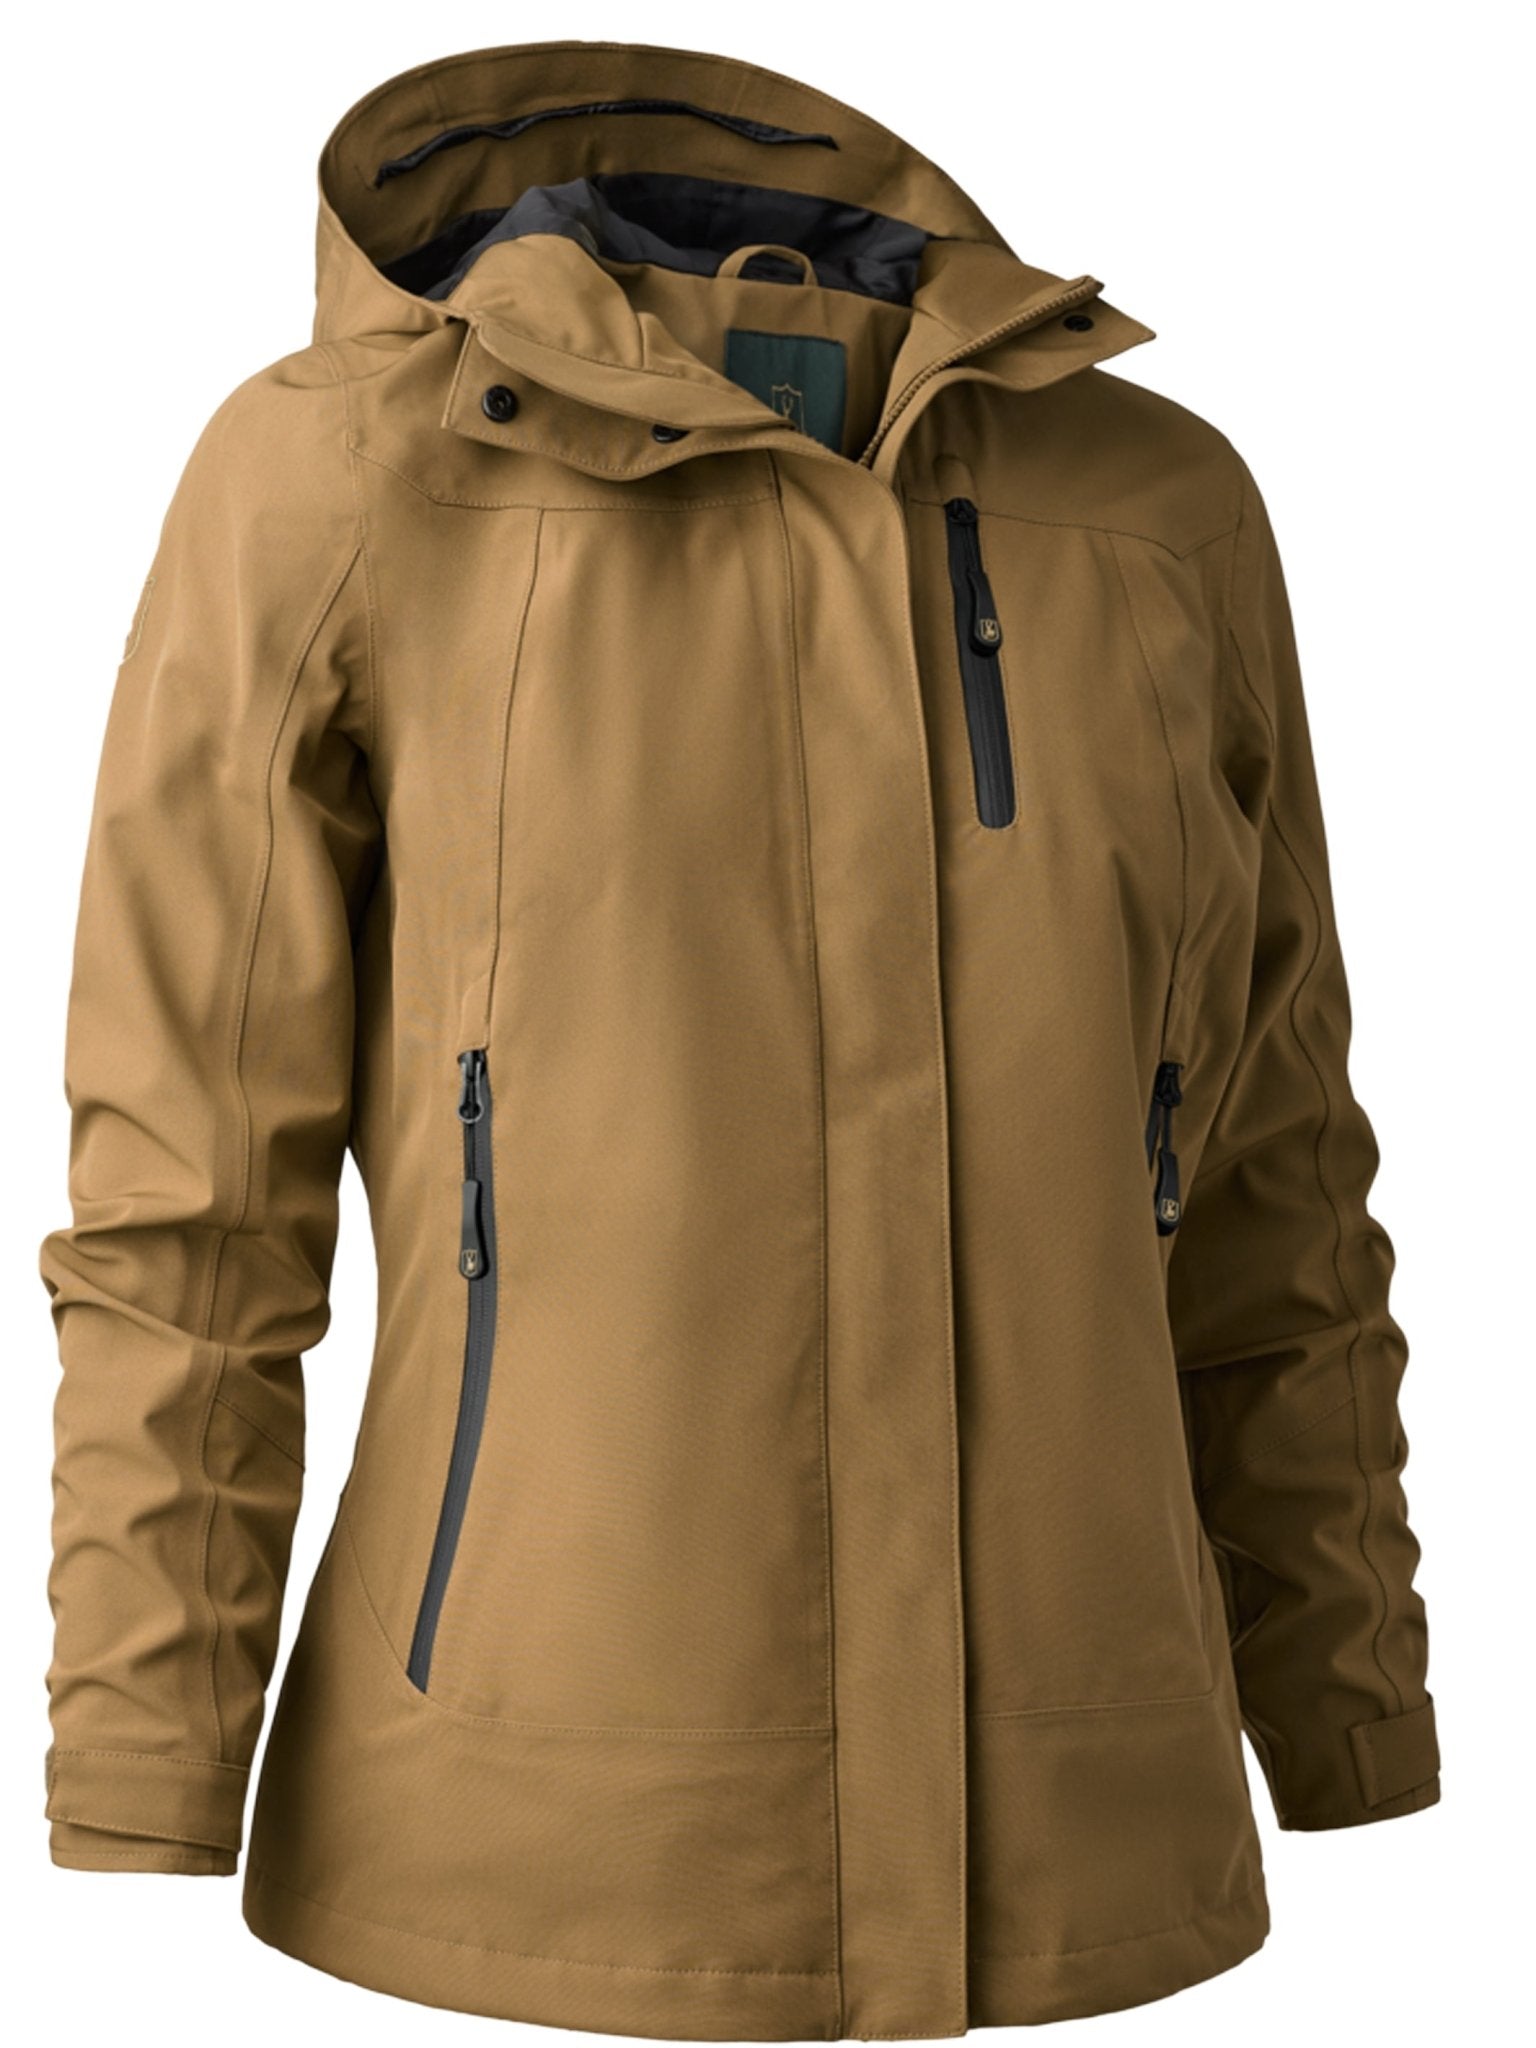 4elementsclothingDeerhunterDeerhunter - Sarek Ladies Waterproof & Windproof Jacket with Taped Seams, breathable, 4 way StretchOuterwear5353-347-36